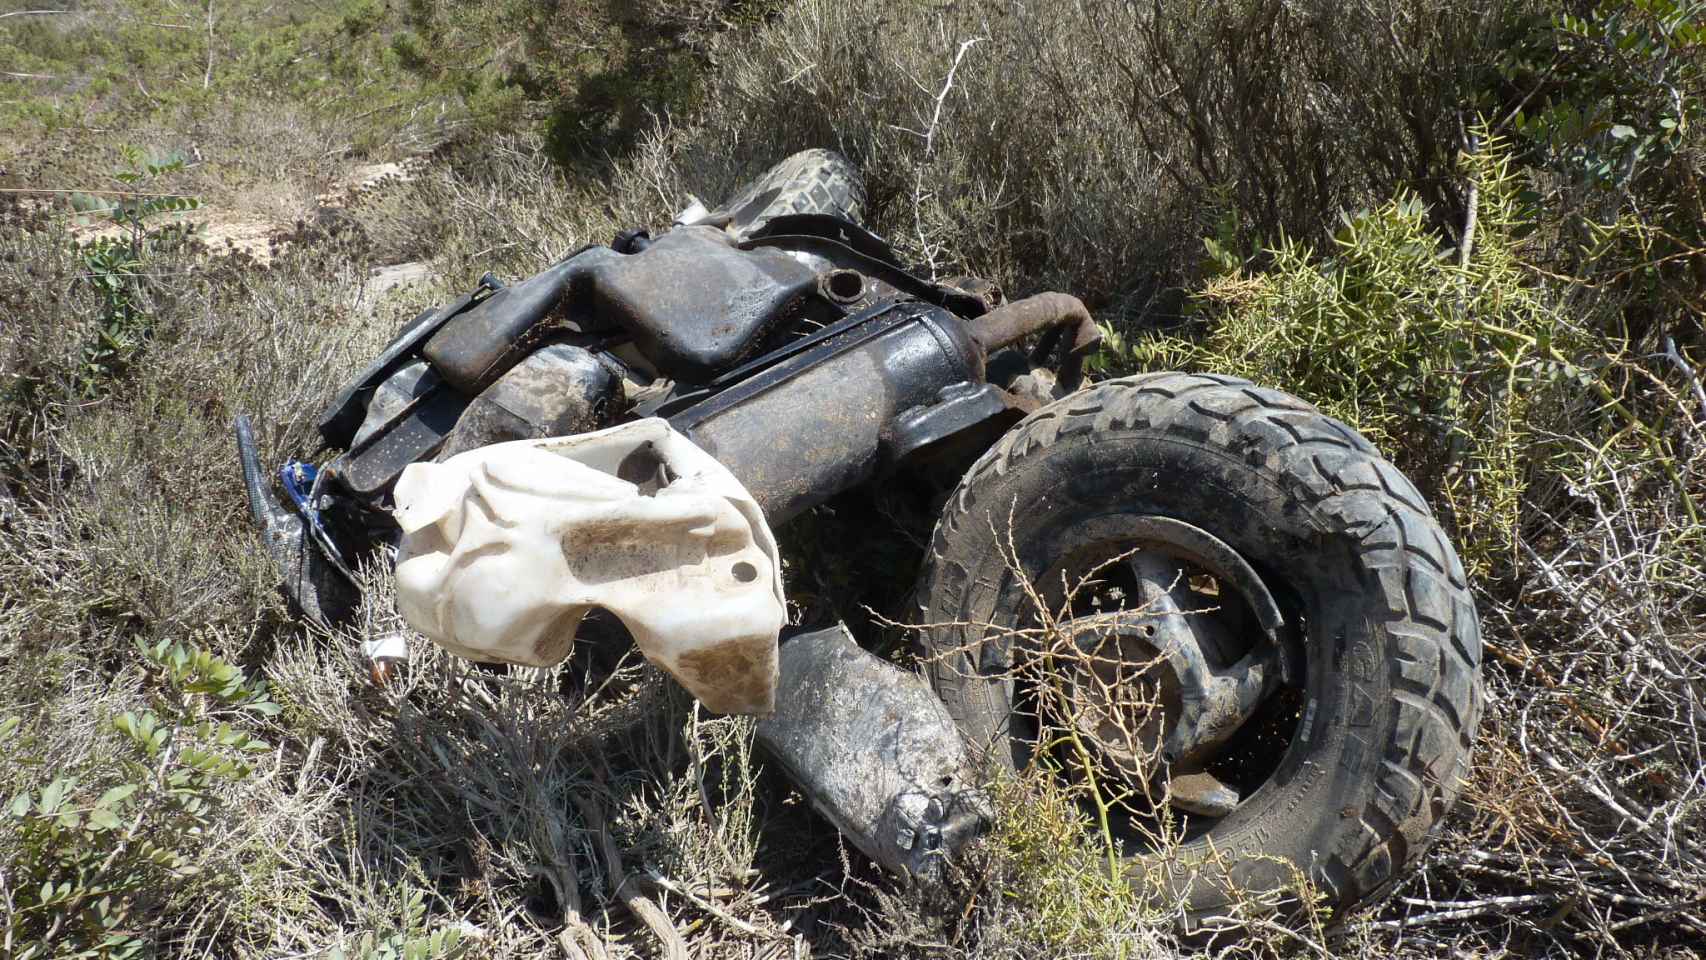 En la imagen, la Piaggio de la argentina destrozada después del accidente en la PM- 820